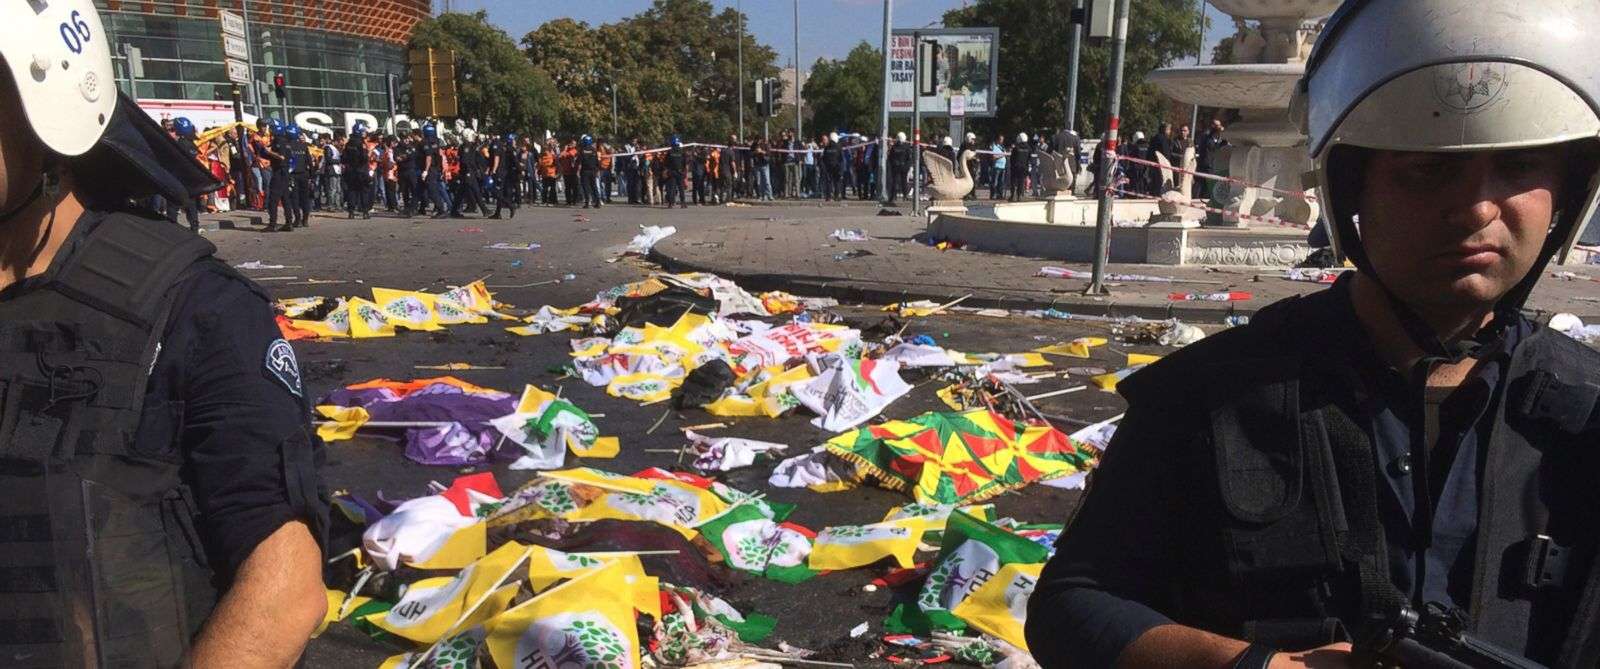 Τουρκία: Βομβιστικές επιθέσεις κατά Κούρδων οργανωμένες από το κόμμα Ερντογάν; Υπονοούμενα Νταβούτογλου!